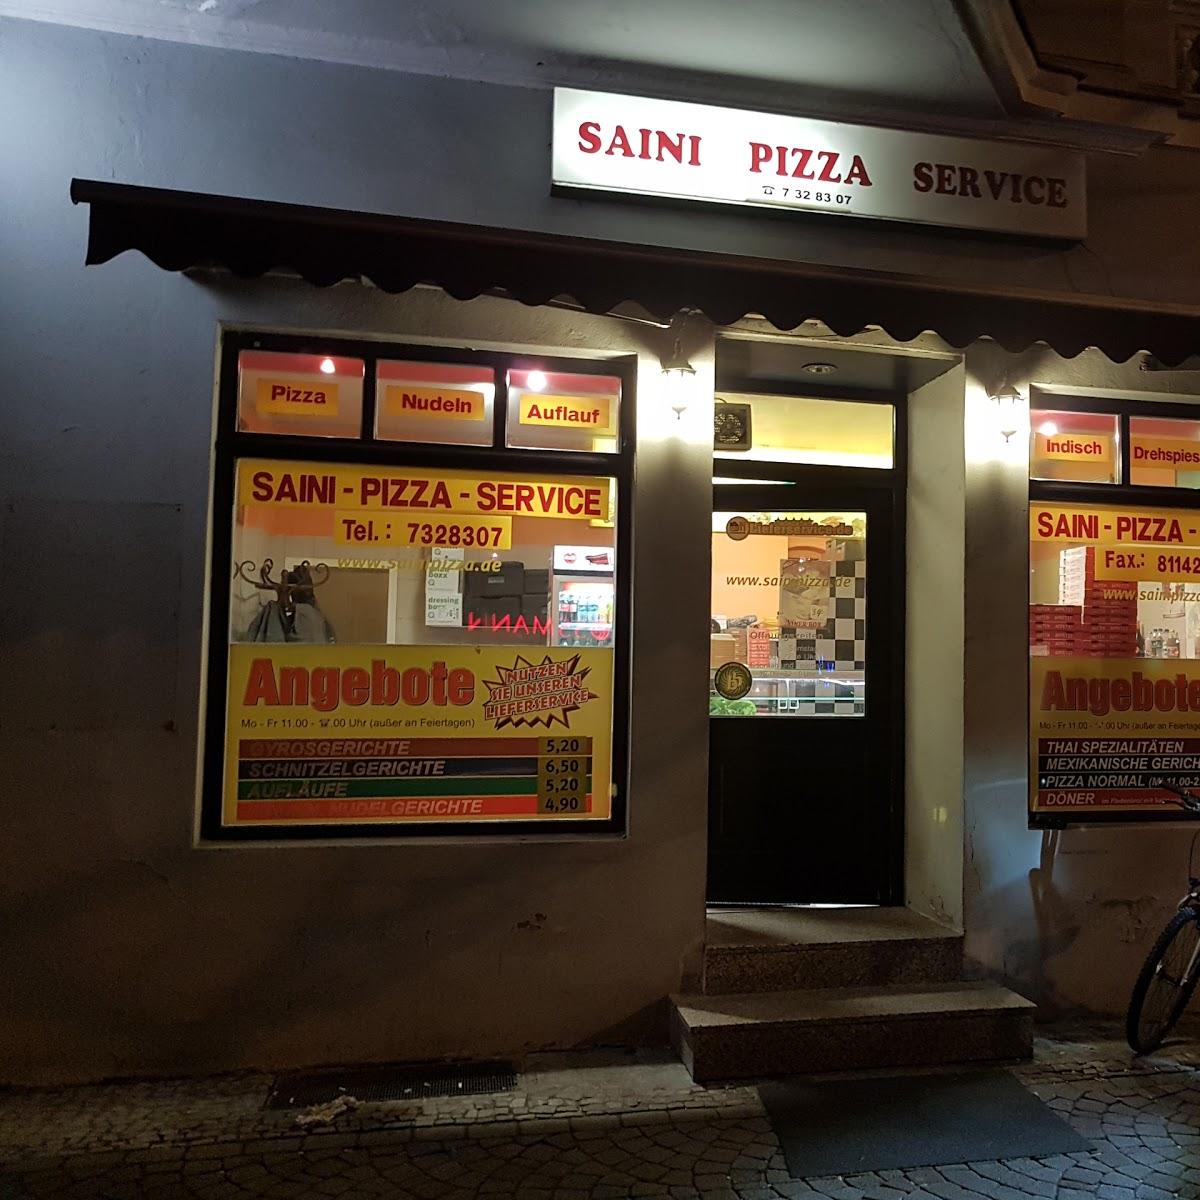 Restaurant "Saini Pizza Service" in Magdeburg